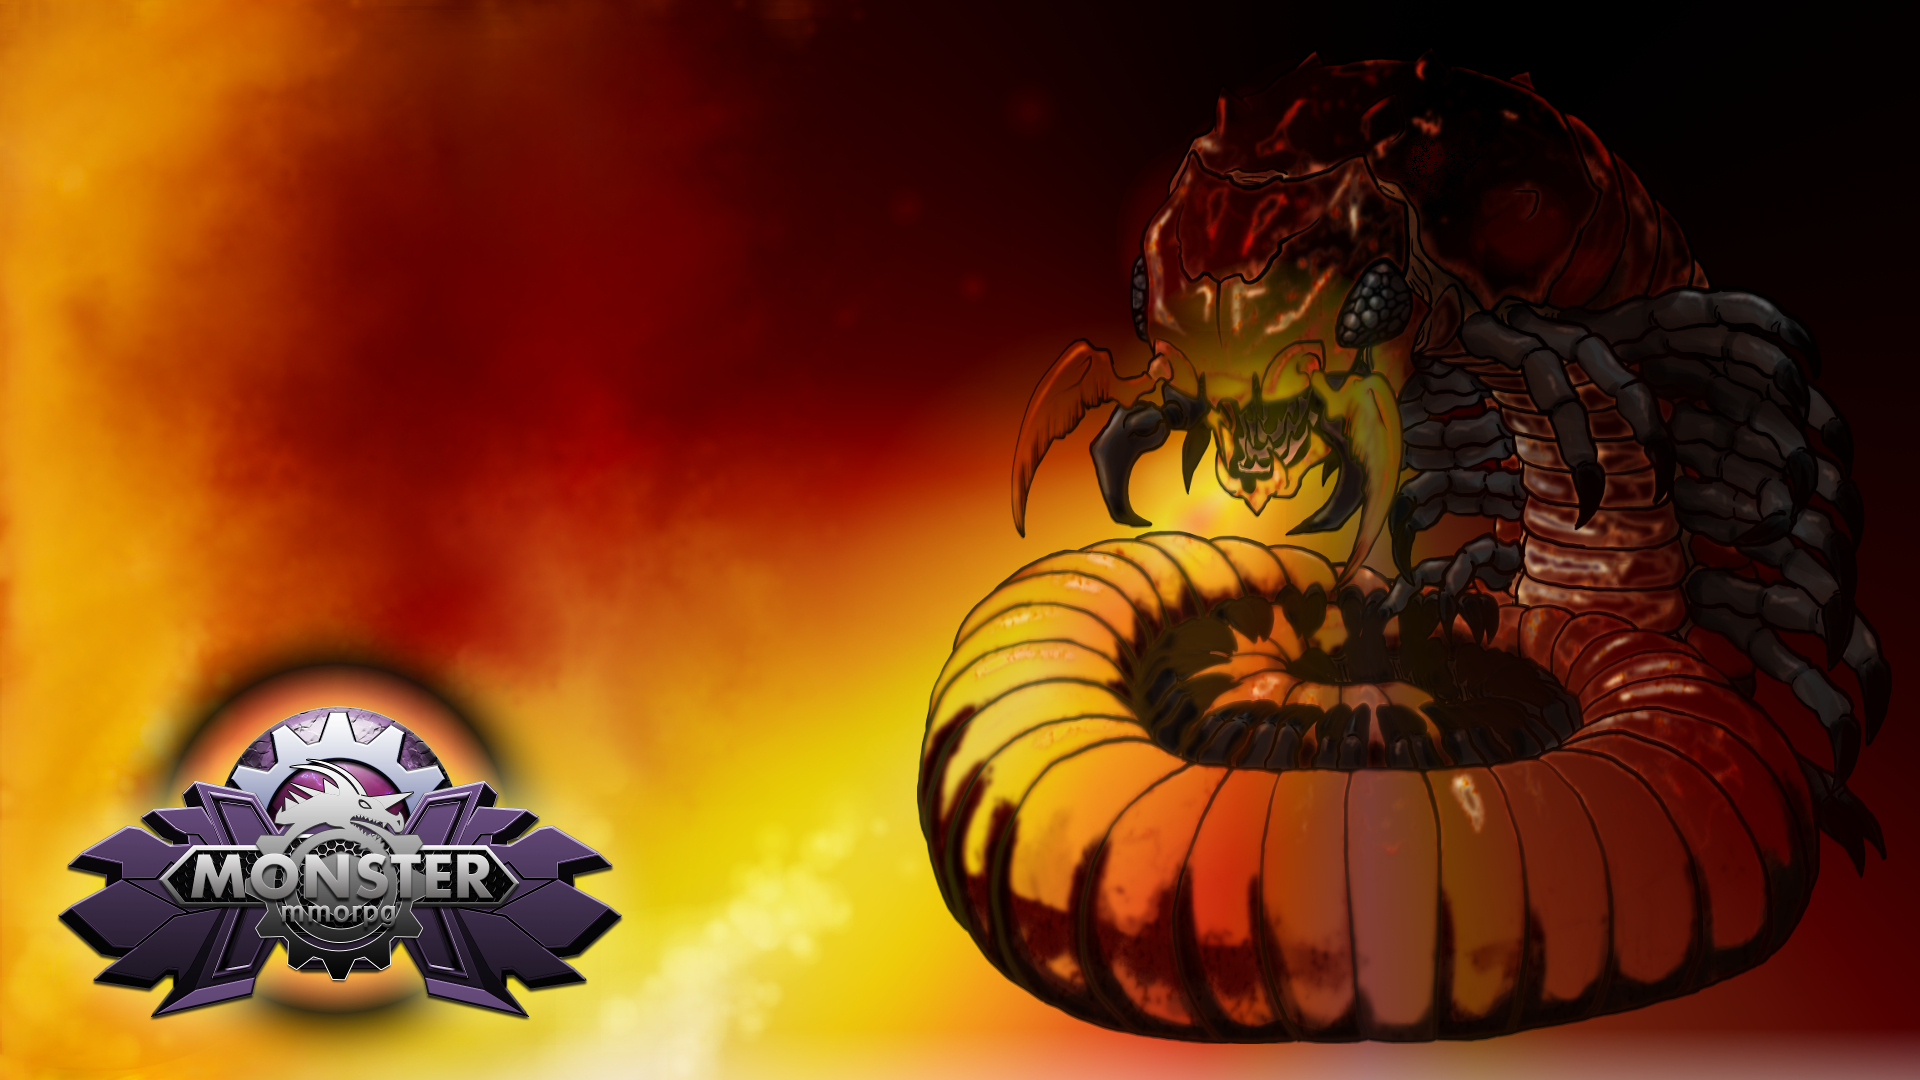 Centipede Monster Of Browser Mmorpg Game Monstermmorpg Game Fanart HD Wallpaper